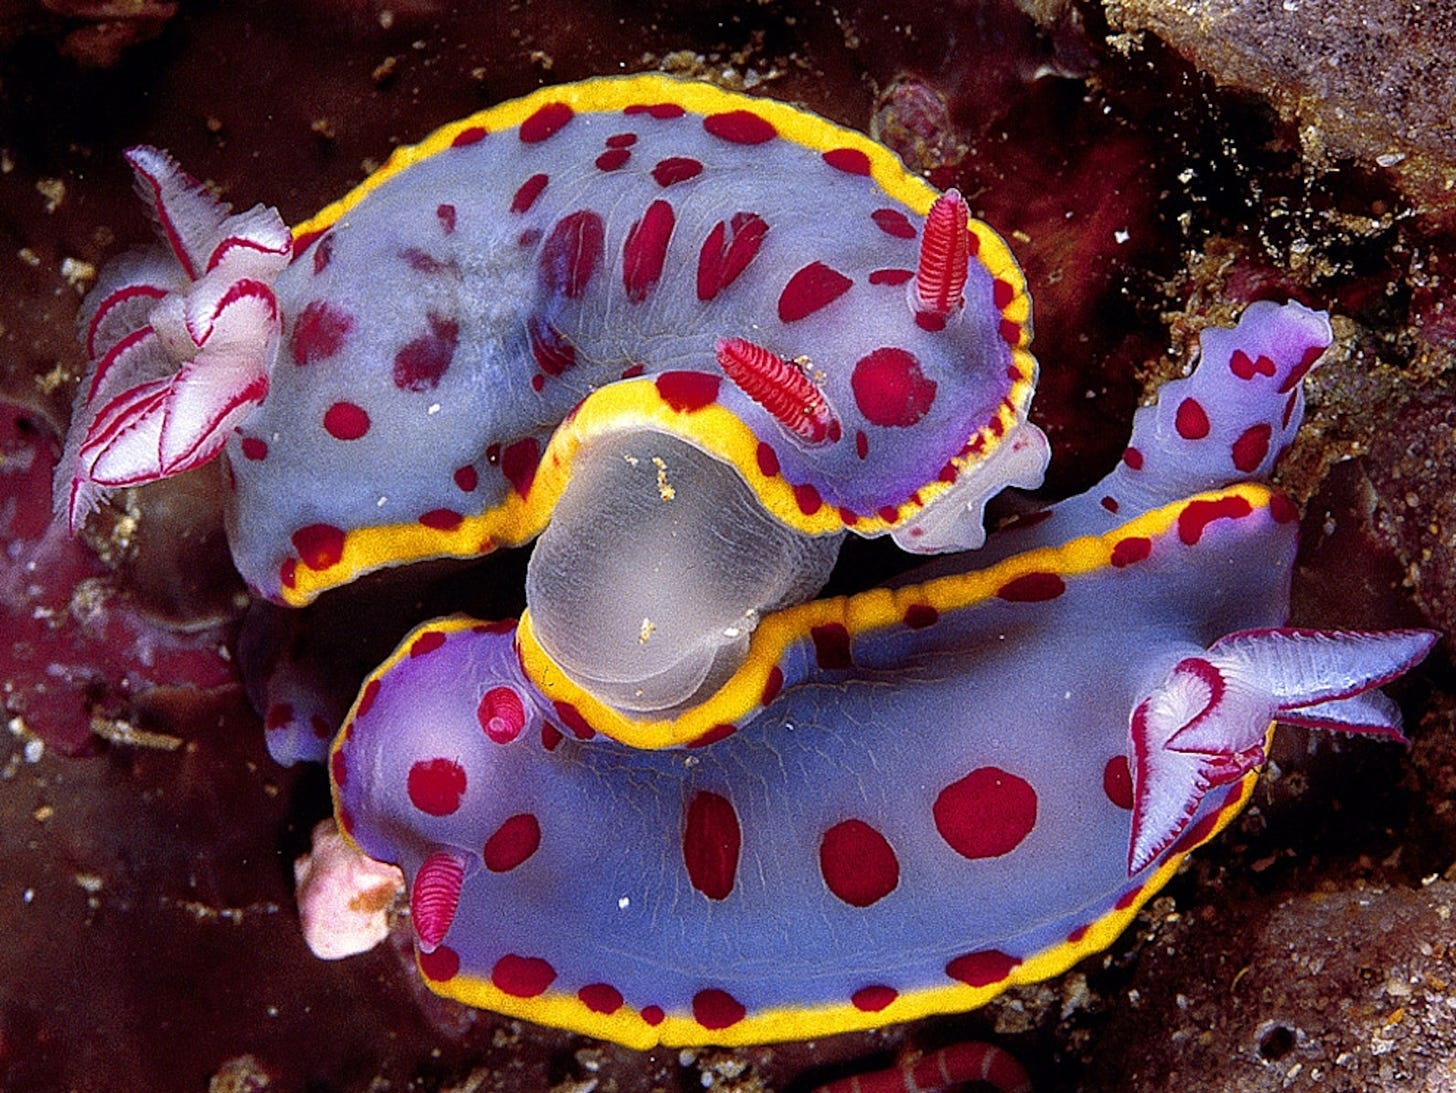 Two colorful sea slugs mating